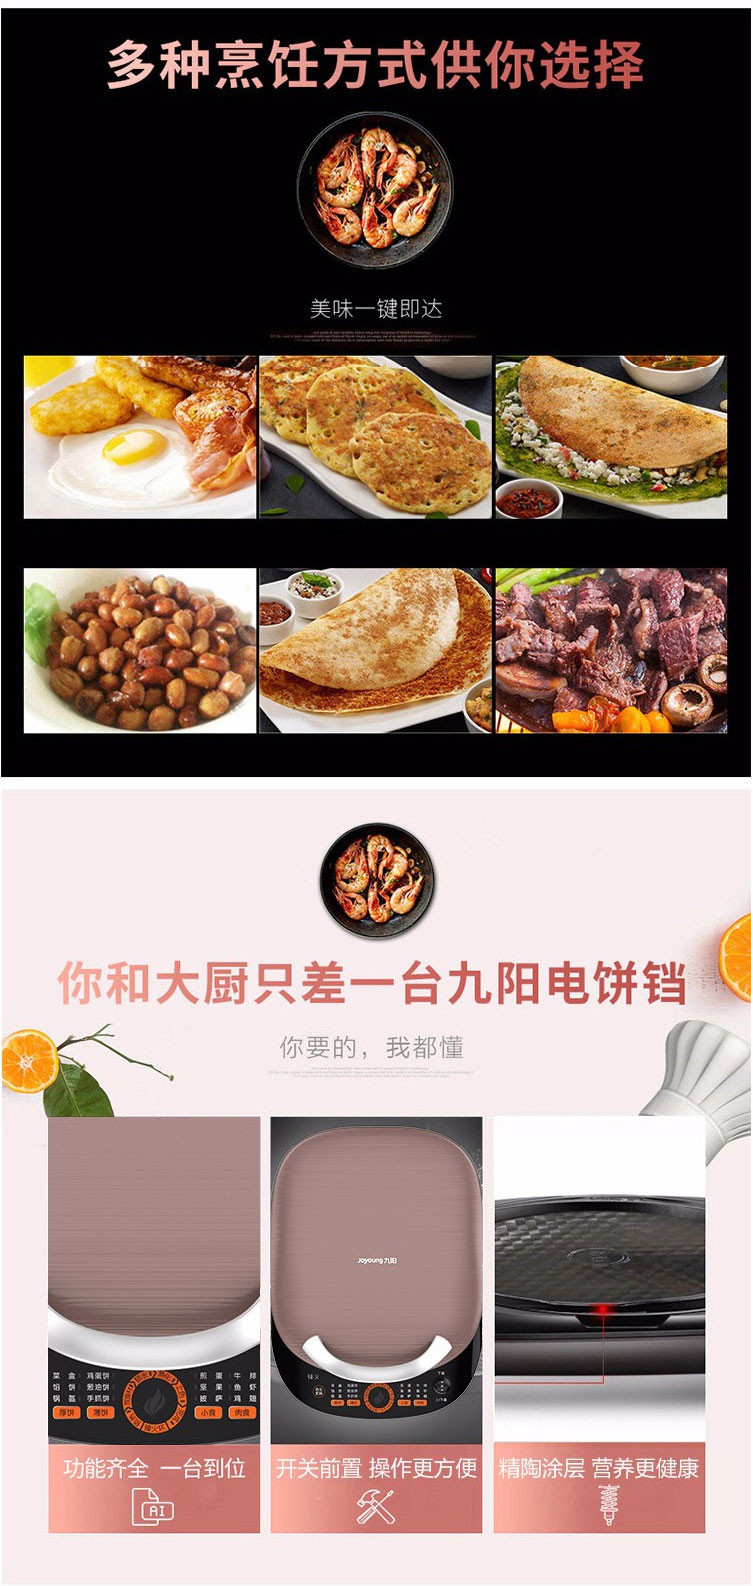 九阳/Joyoung JK33-J6 电饼铛 双面悬浮煎蛋器 不粘煎烤机